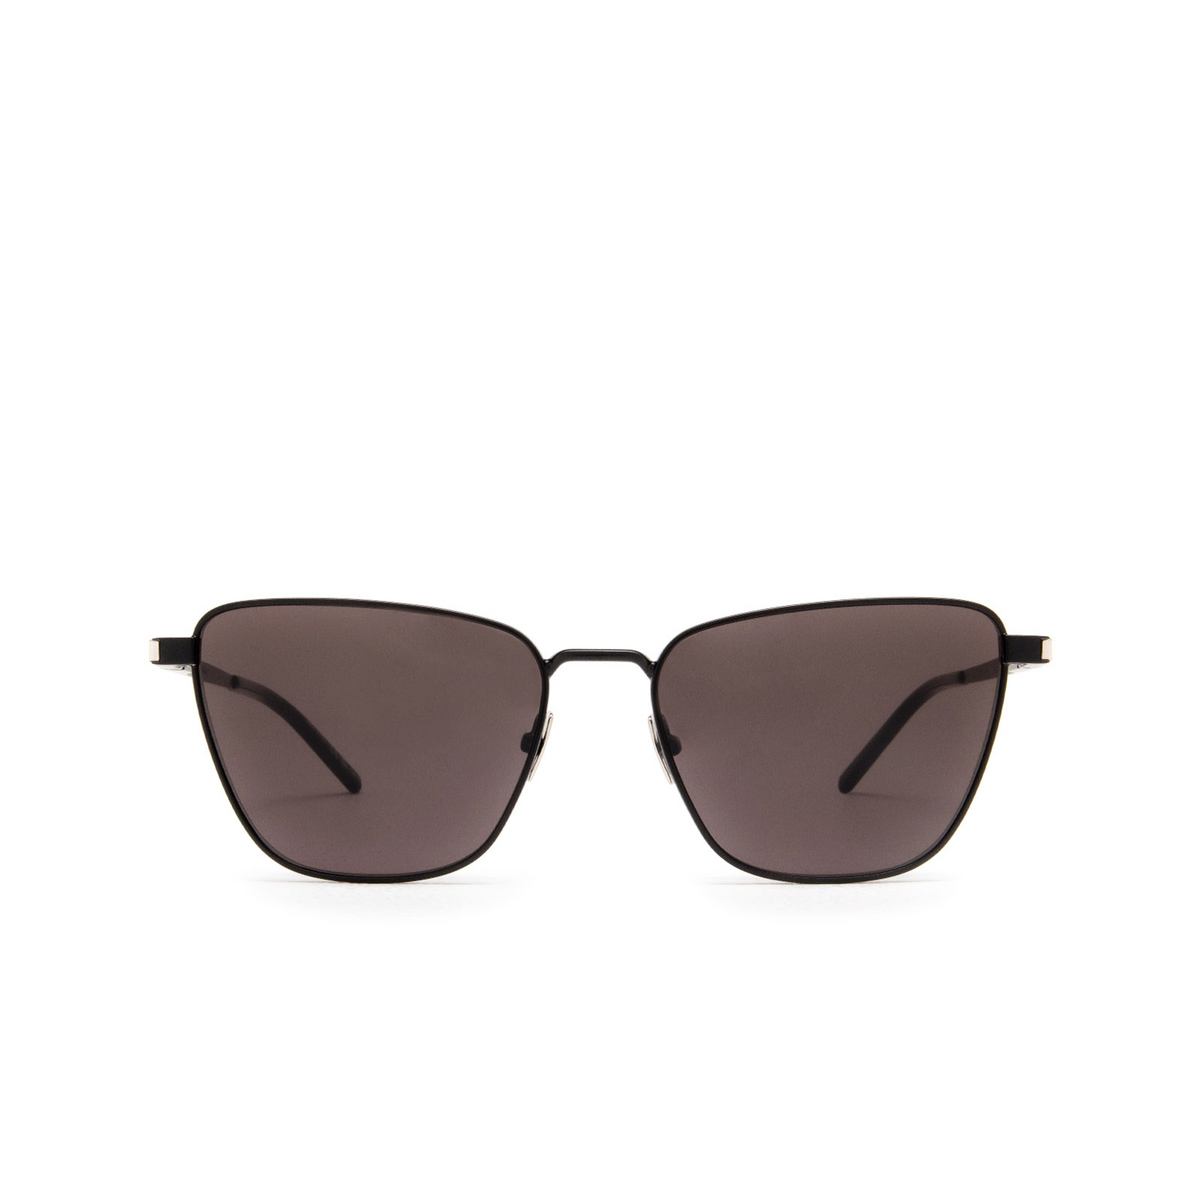 Saint Laurent SL 551 Sunglasses 001 Black - front view